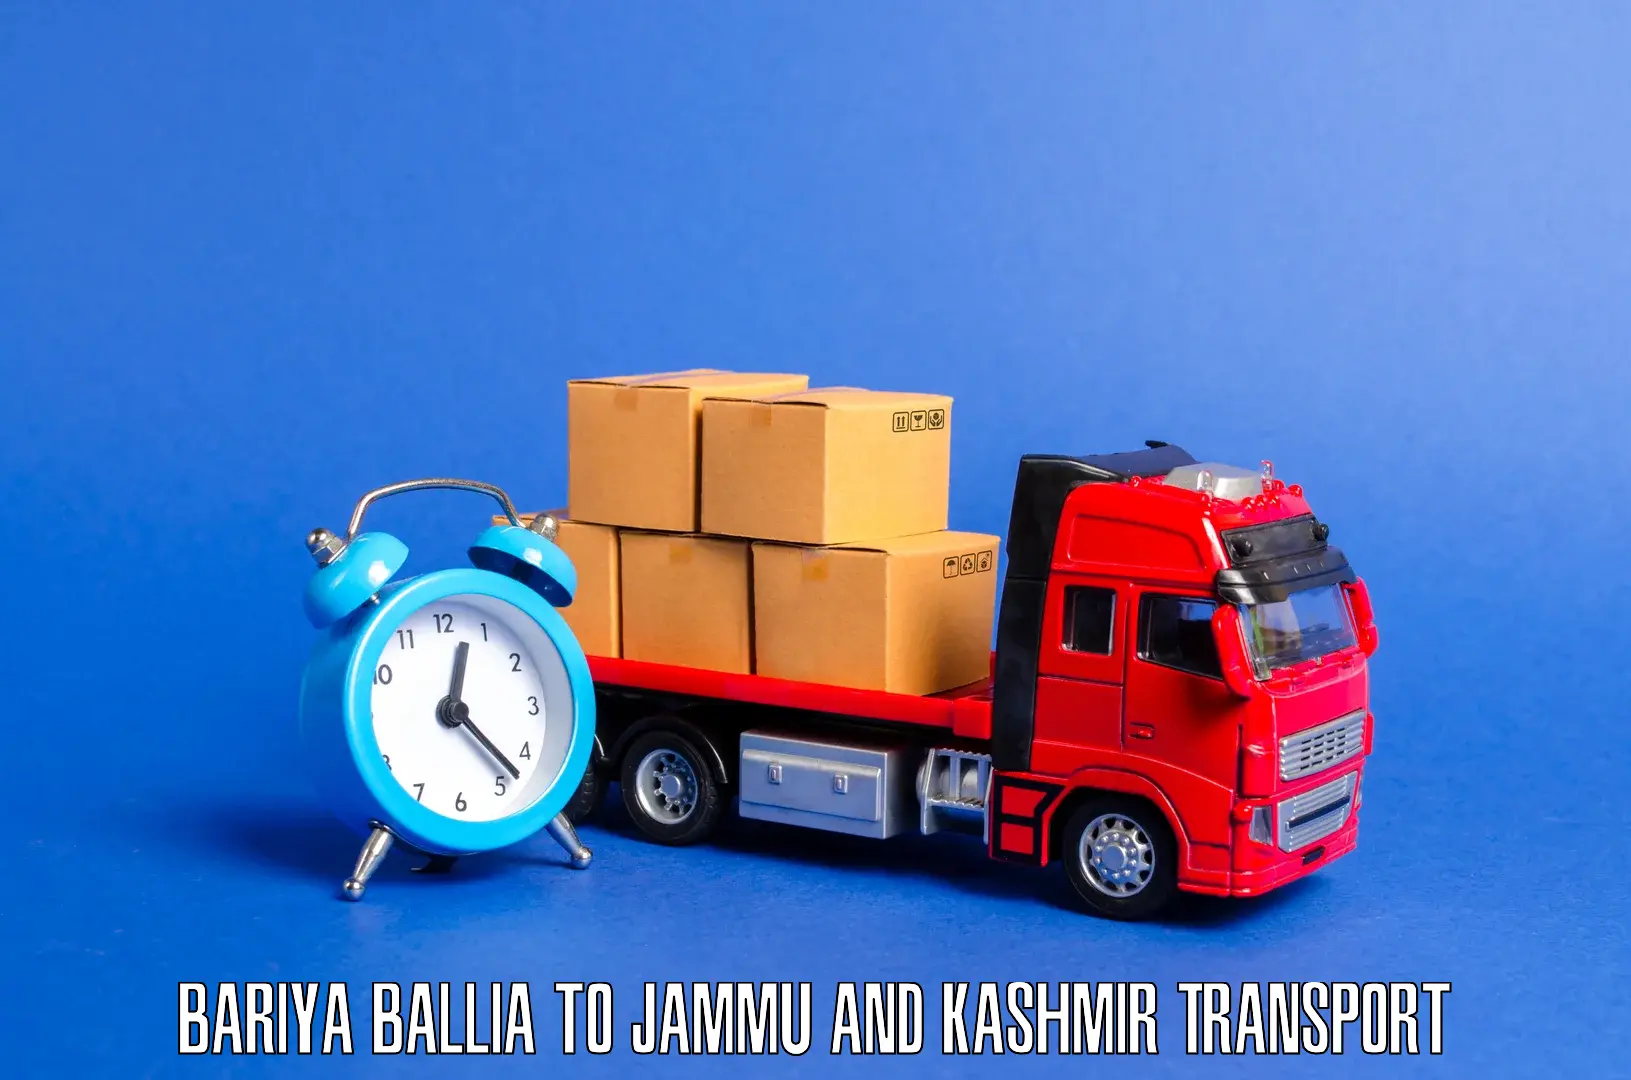 Bike transport service in Bariya Ballia to Jammu and Kashmir